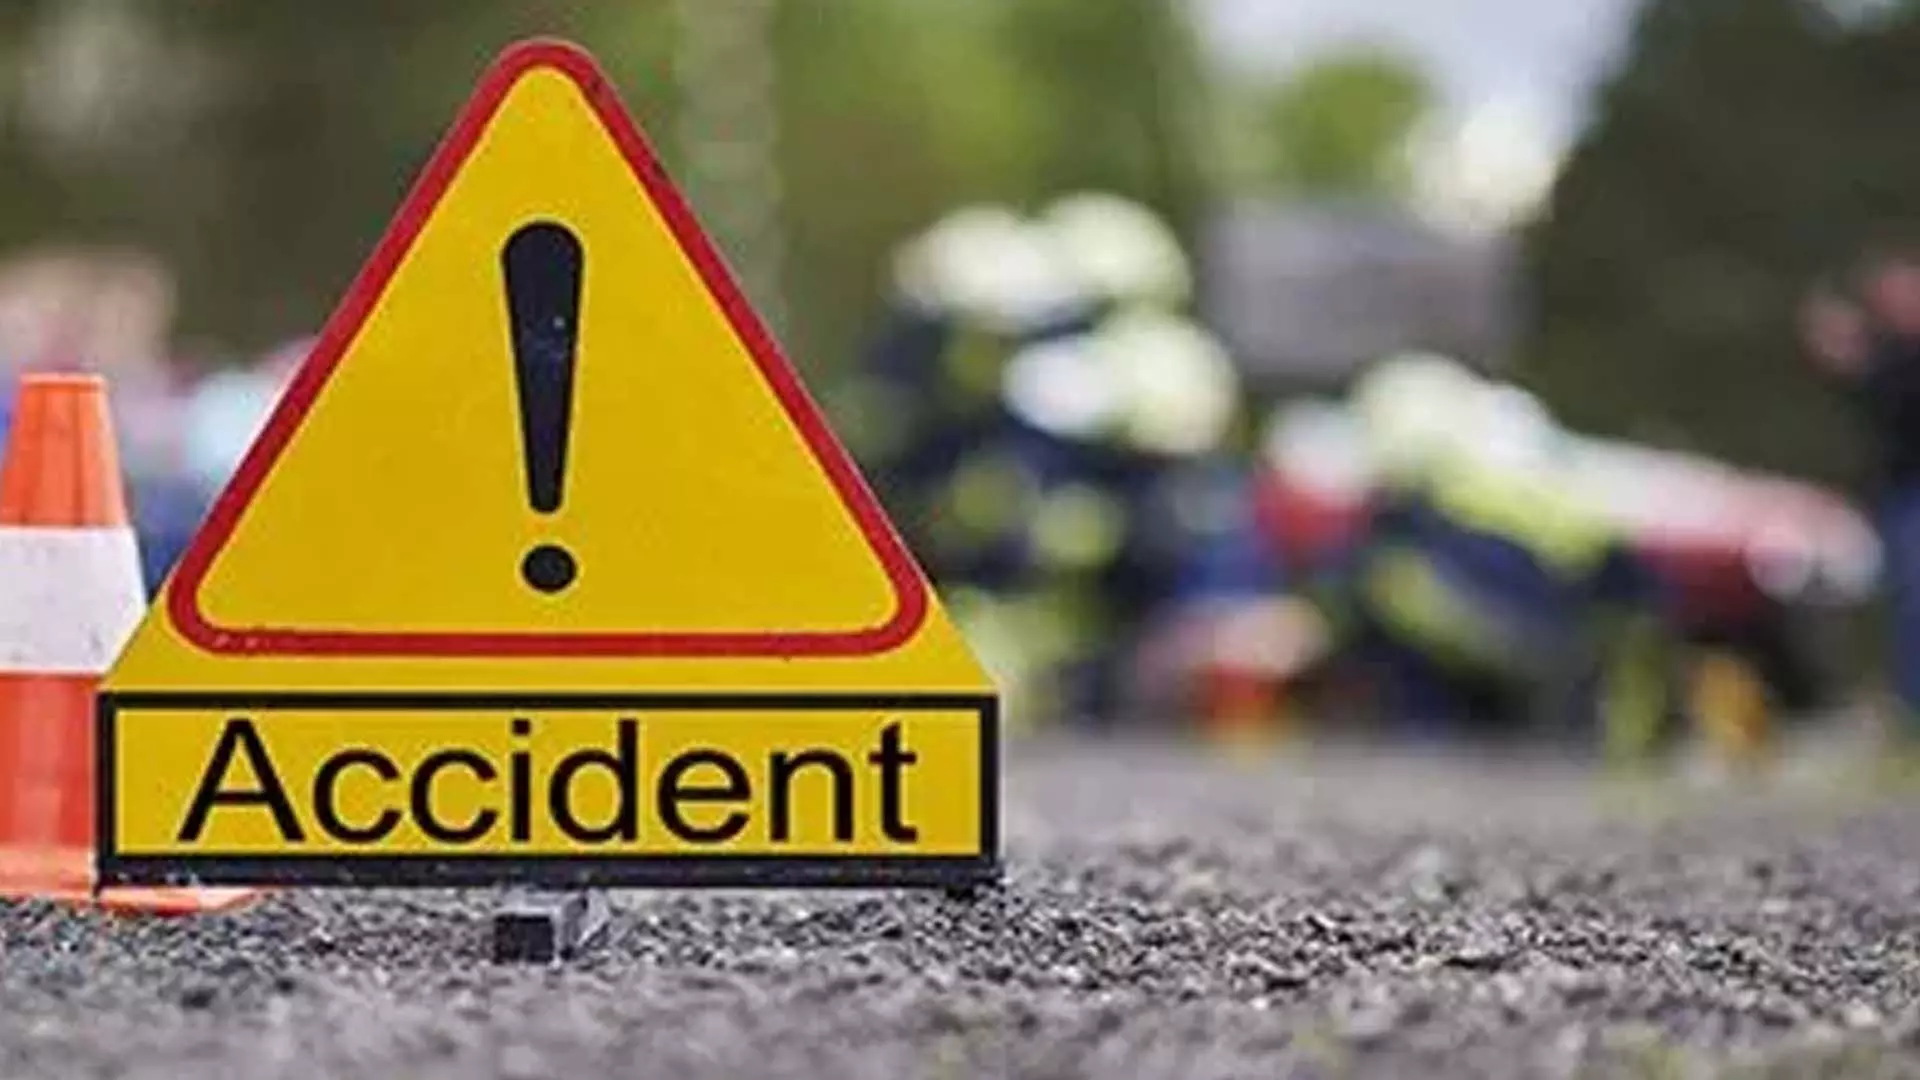 Srinagar: पट्टन में सड़क दुर्घटना में पैदल यात्री की मौत